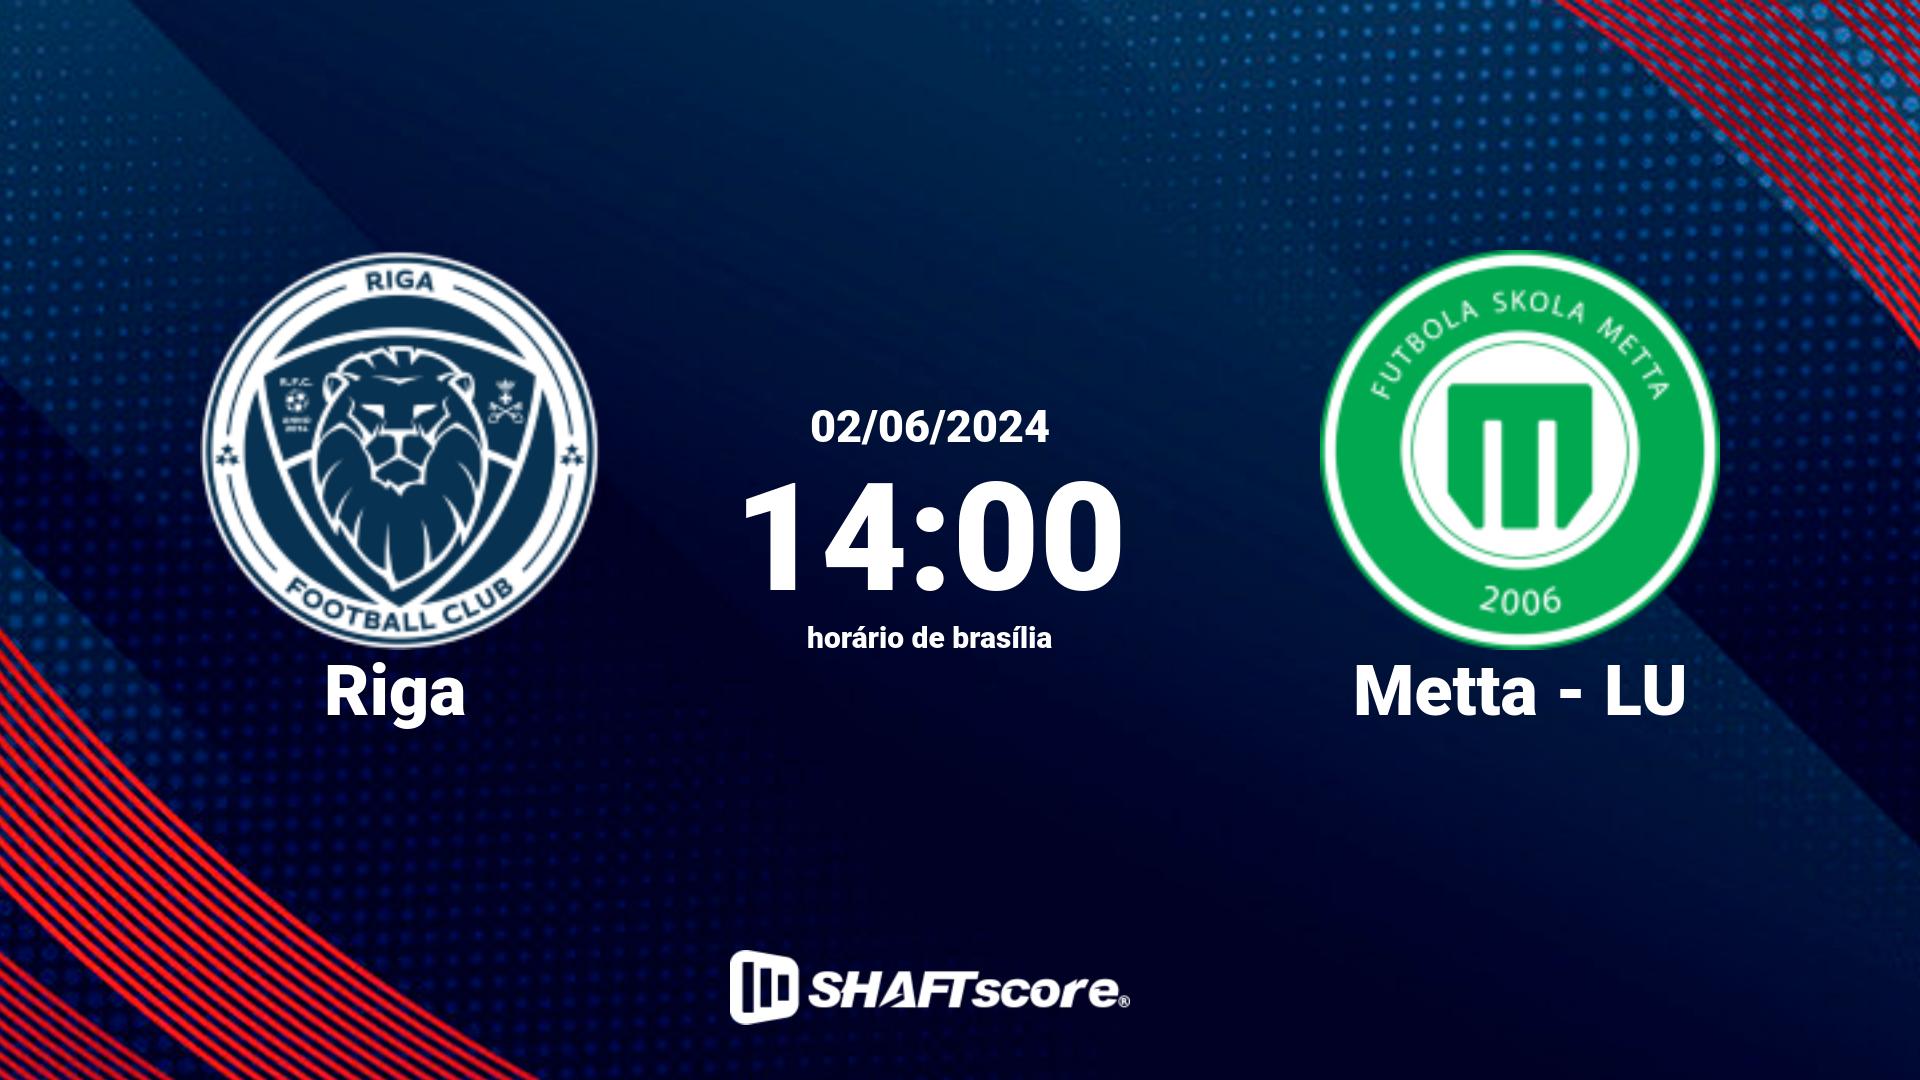 Estatísticas do jogo Riga vs Metta - LU 02.06 14:00